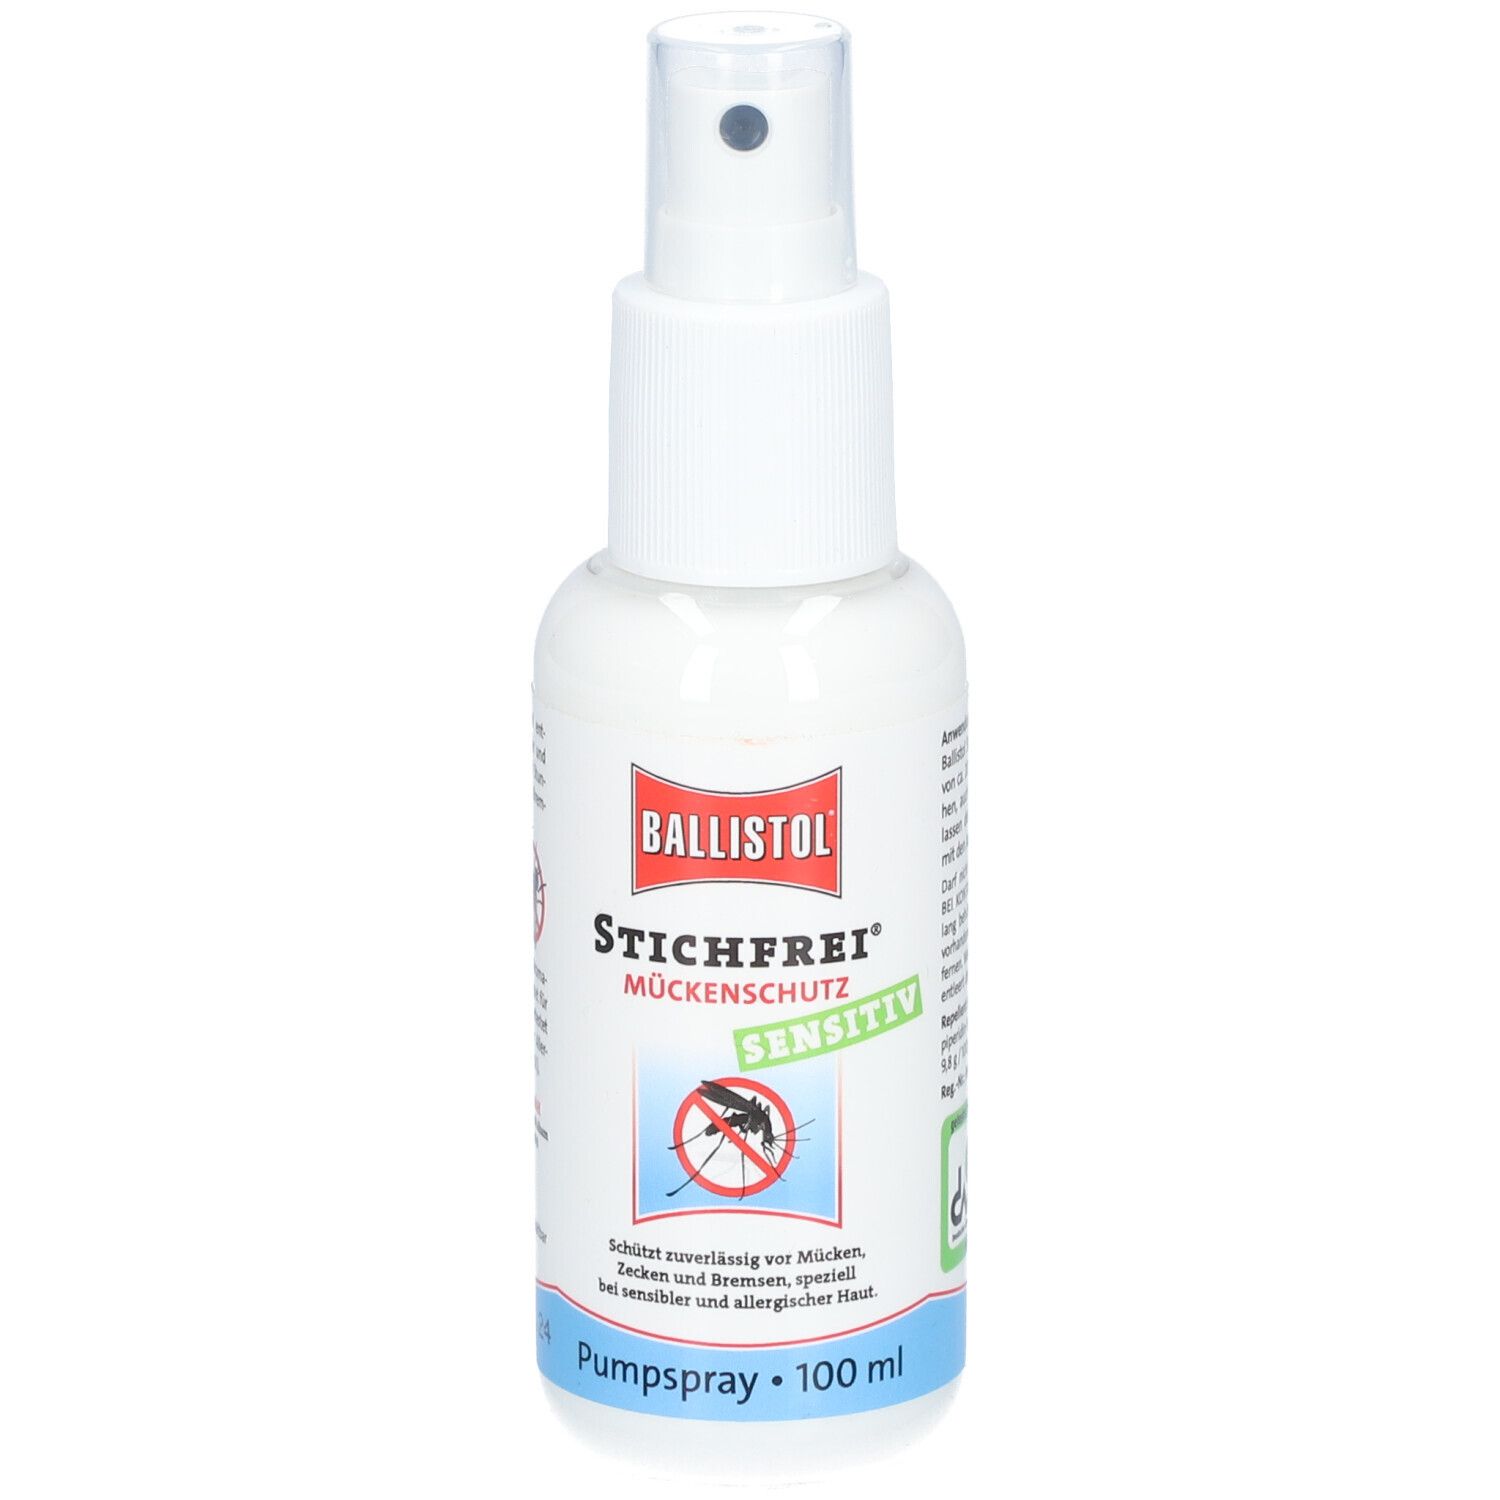 Ballistol Stichfrei® Sensitiv Mückenspray